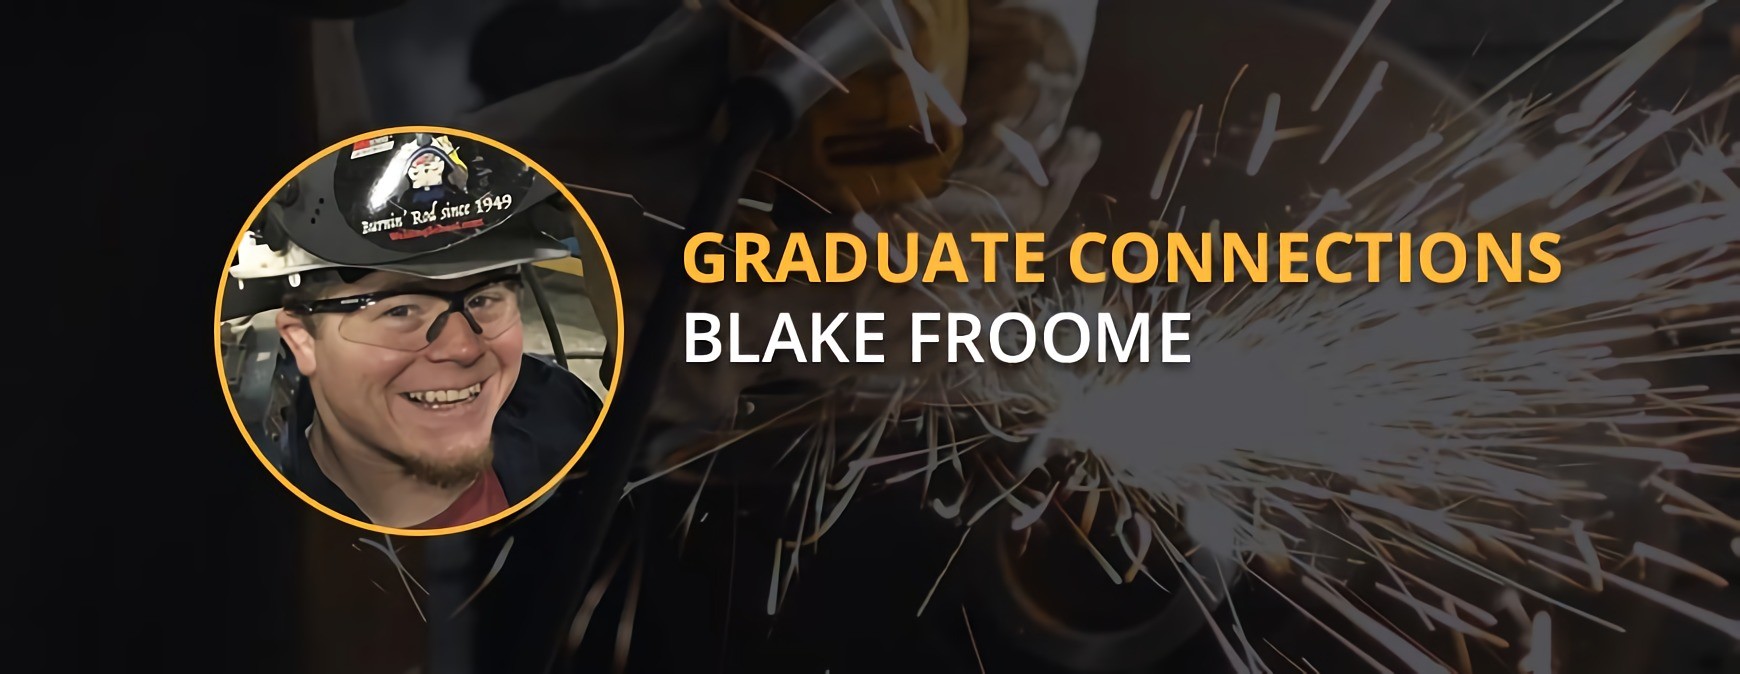 Blake Froome, graduado de TWS